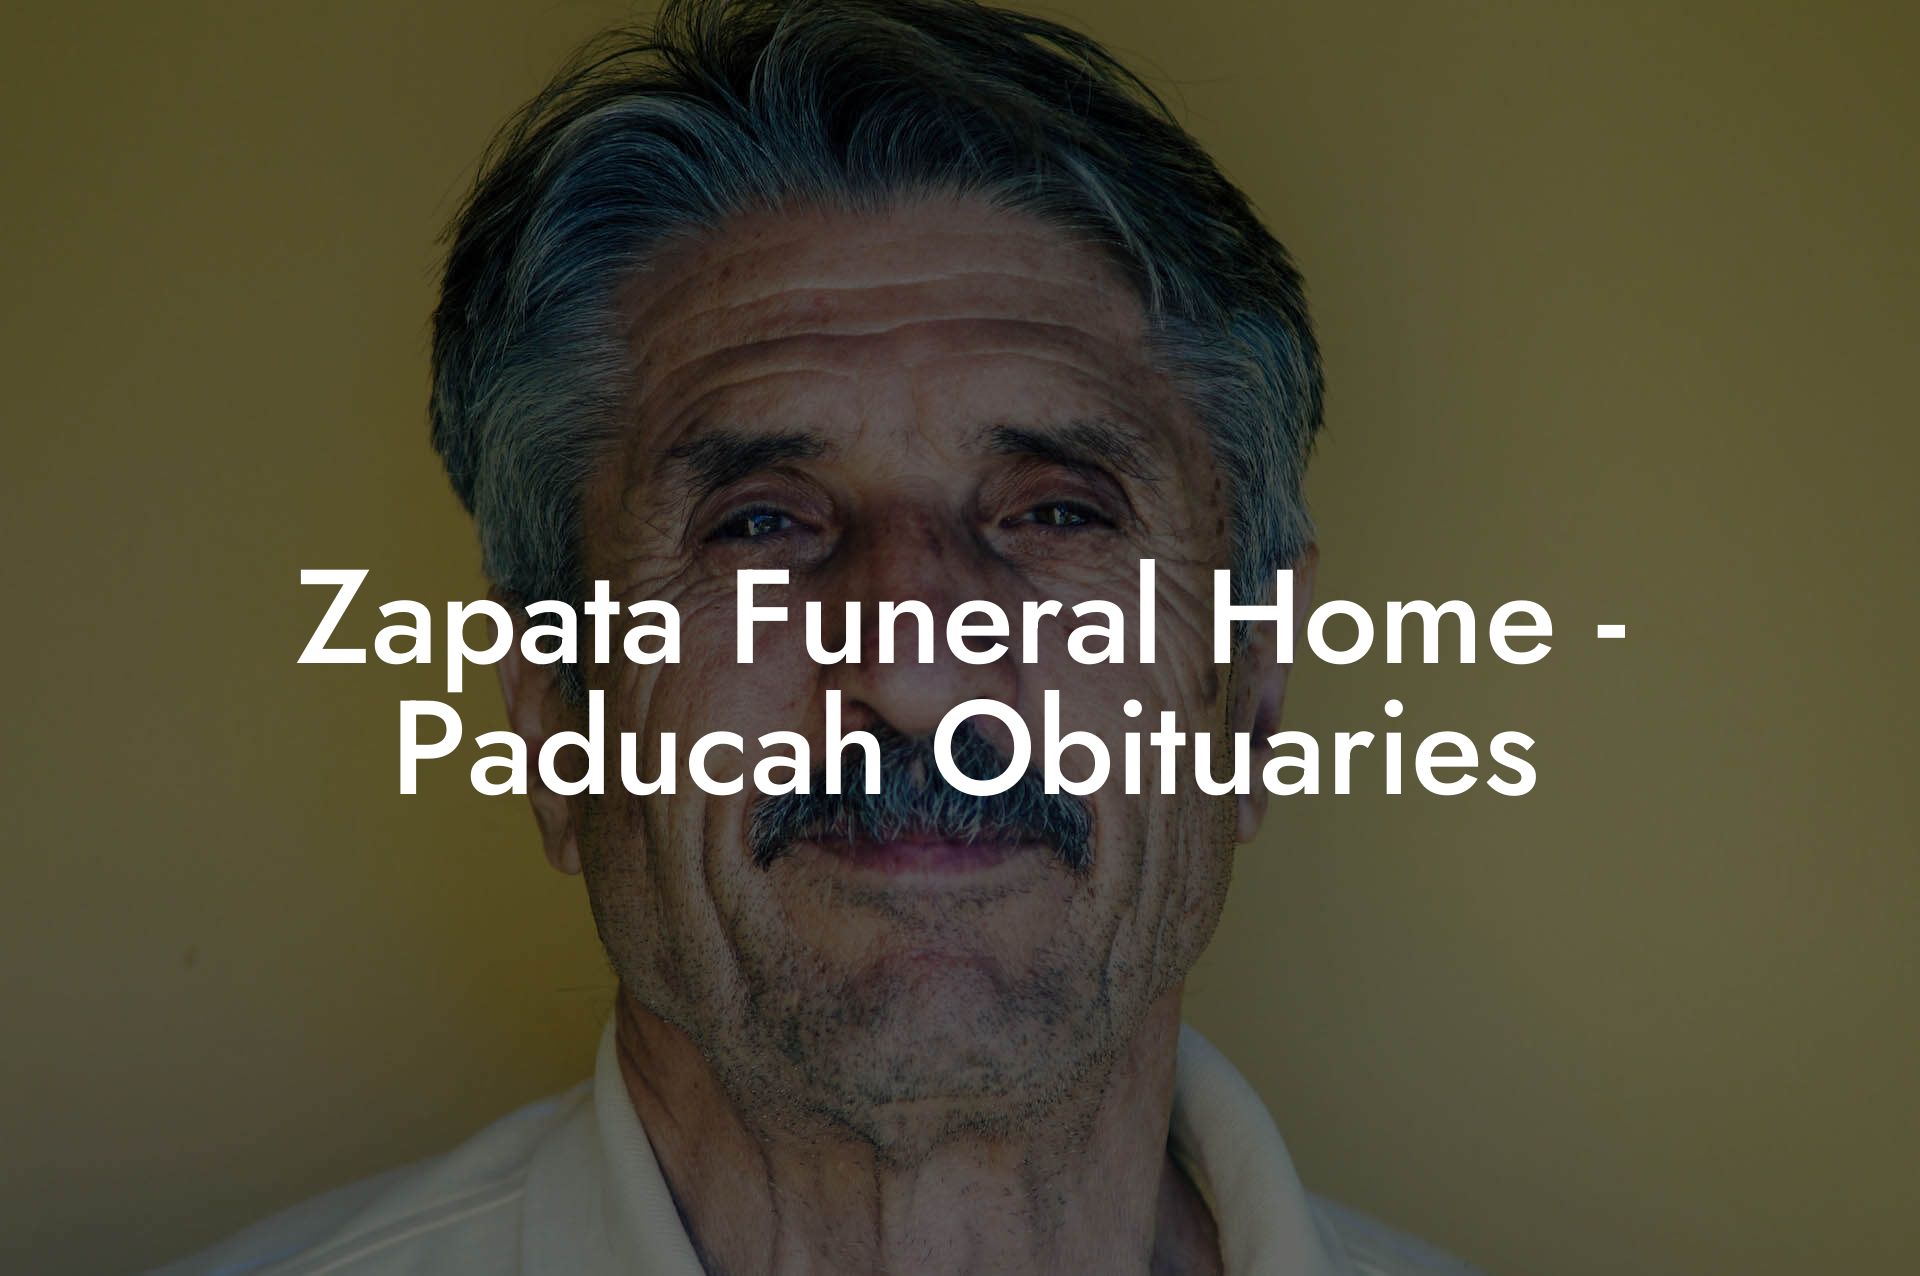 Zapata Funeral Home - Paducah Obituaries